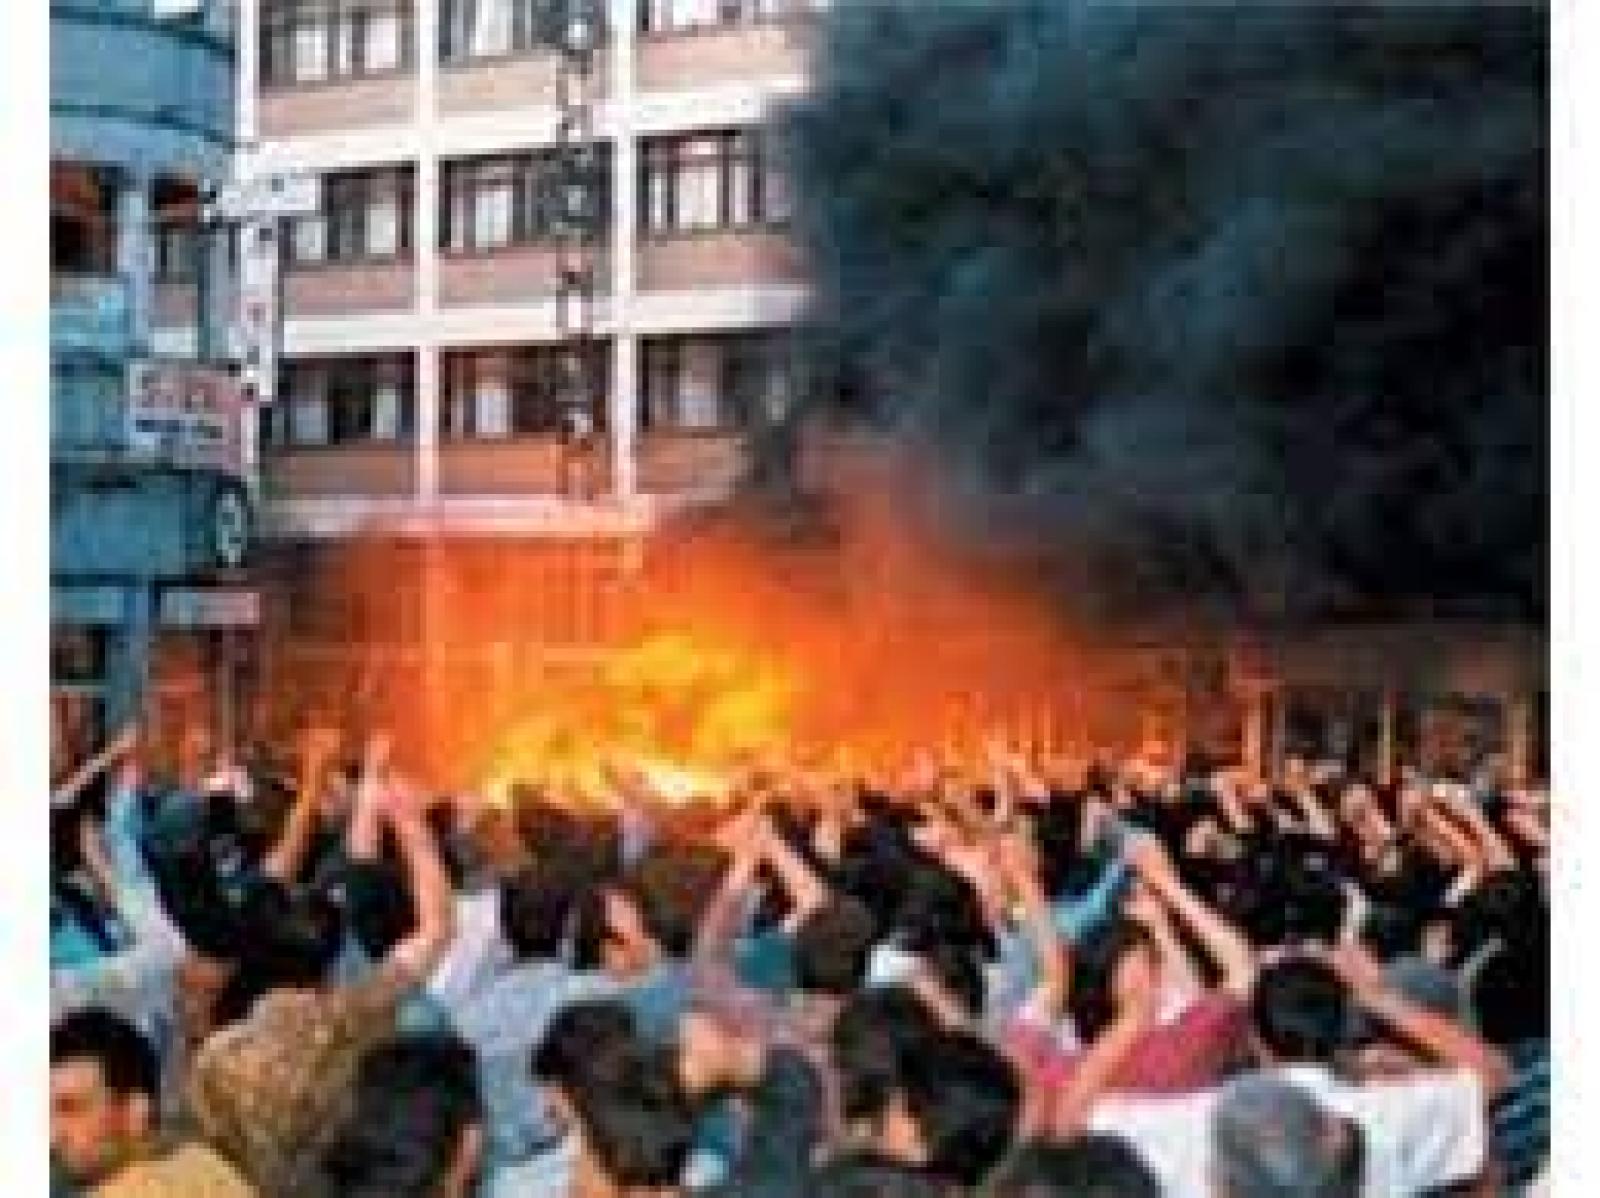 مجزرة سيفاس، فندق ماديماك، 2 تمّوز/ يوليو 1993- مقطع مُصوّر يُظهرُ المُحتجّينَ والحريق المُندلع، وكالة أنباء إحلاس